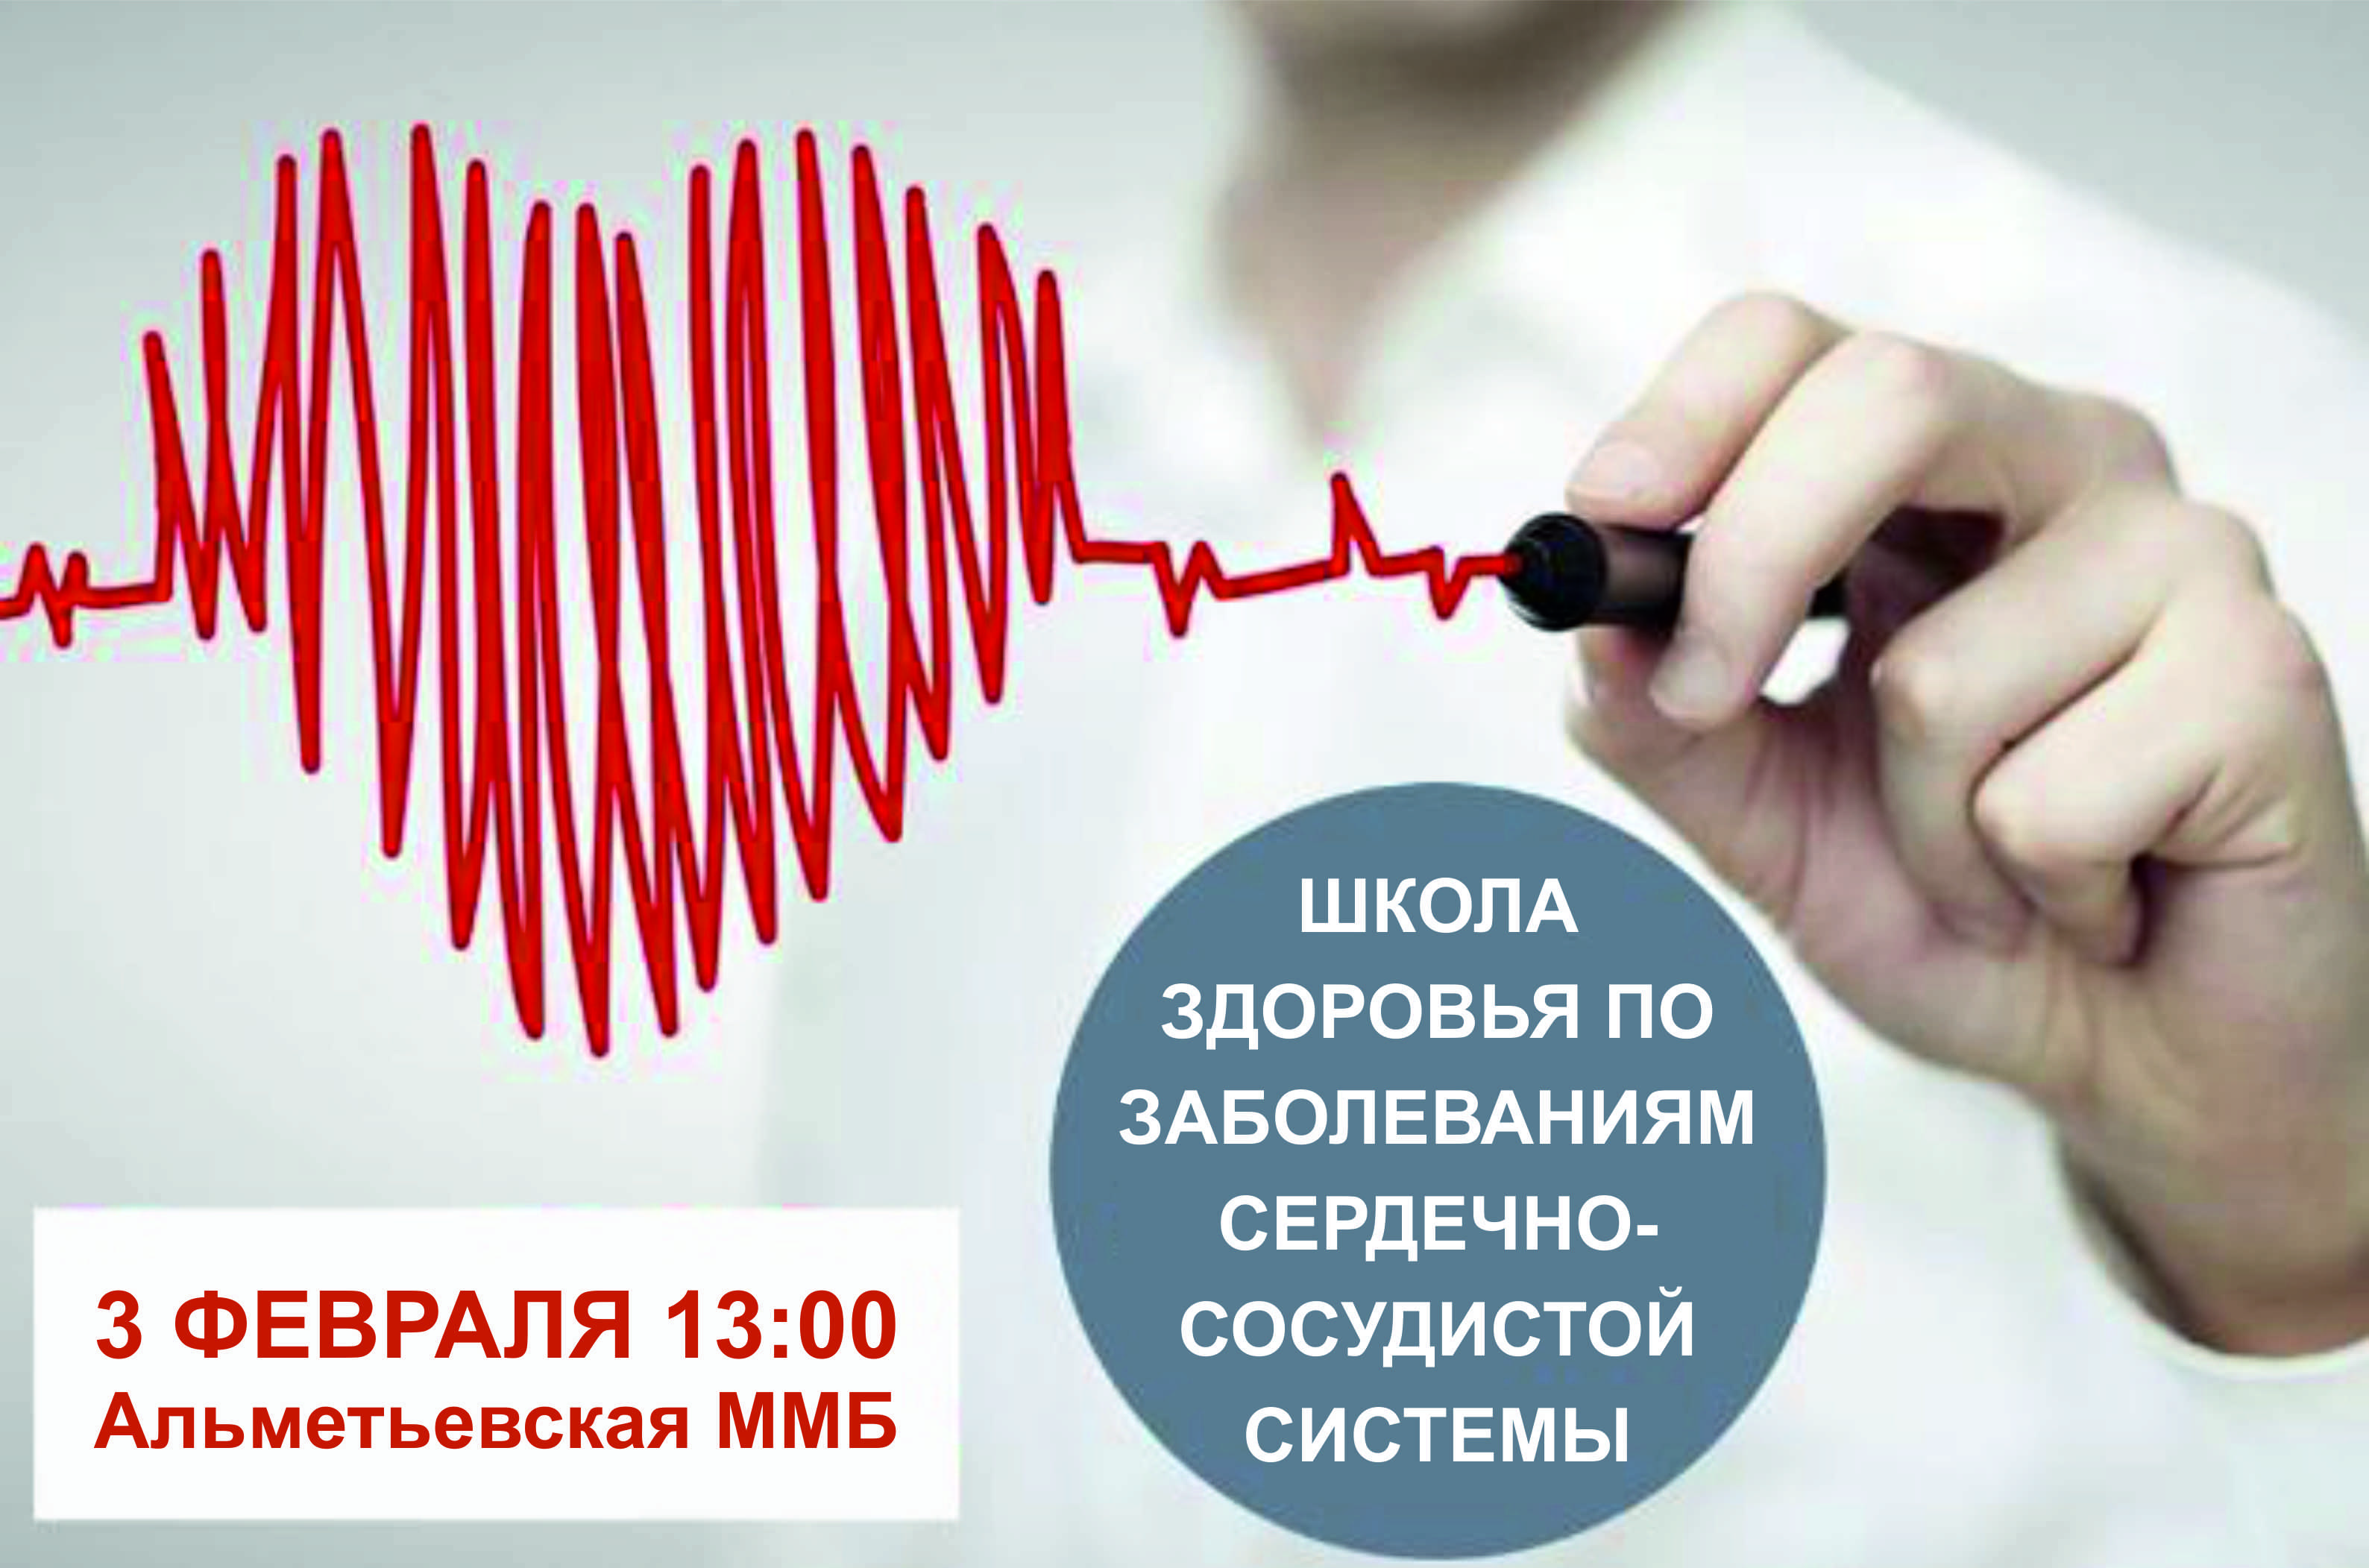 3 февраля в АММБ пройдет Школа здоровья по заболеваниям сердечно-сосудистой системы